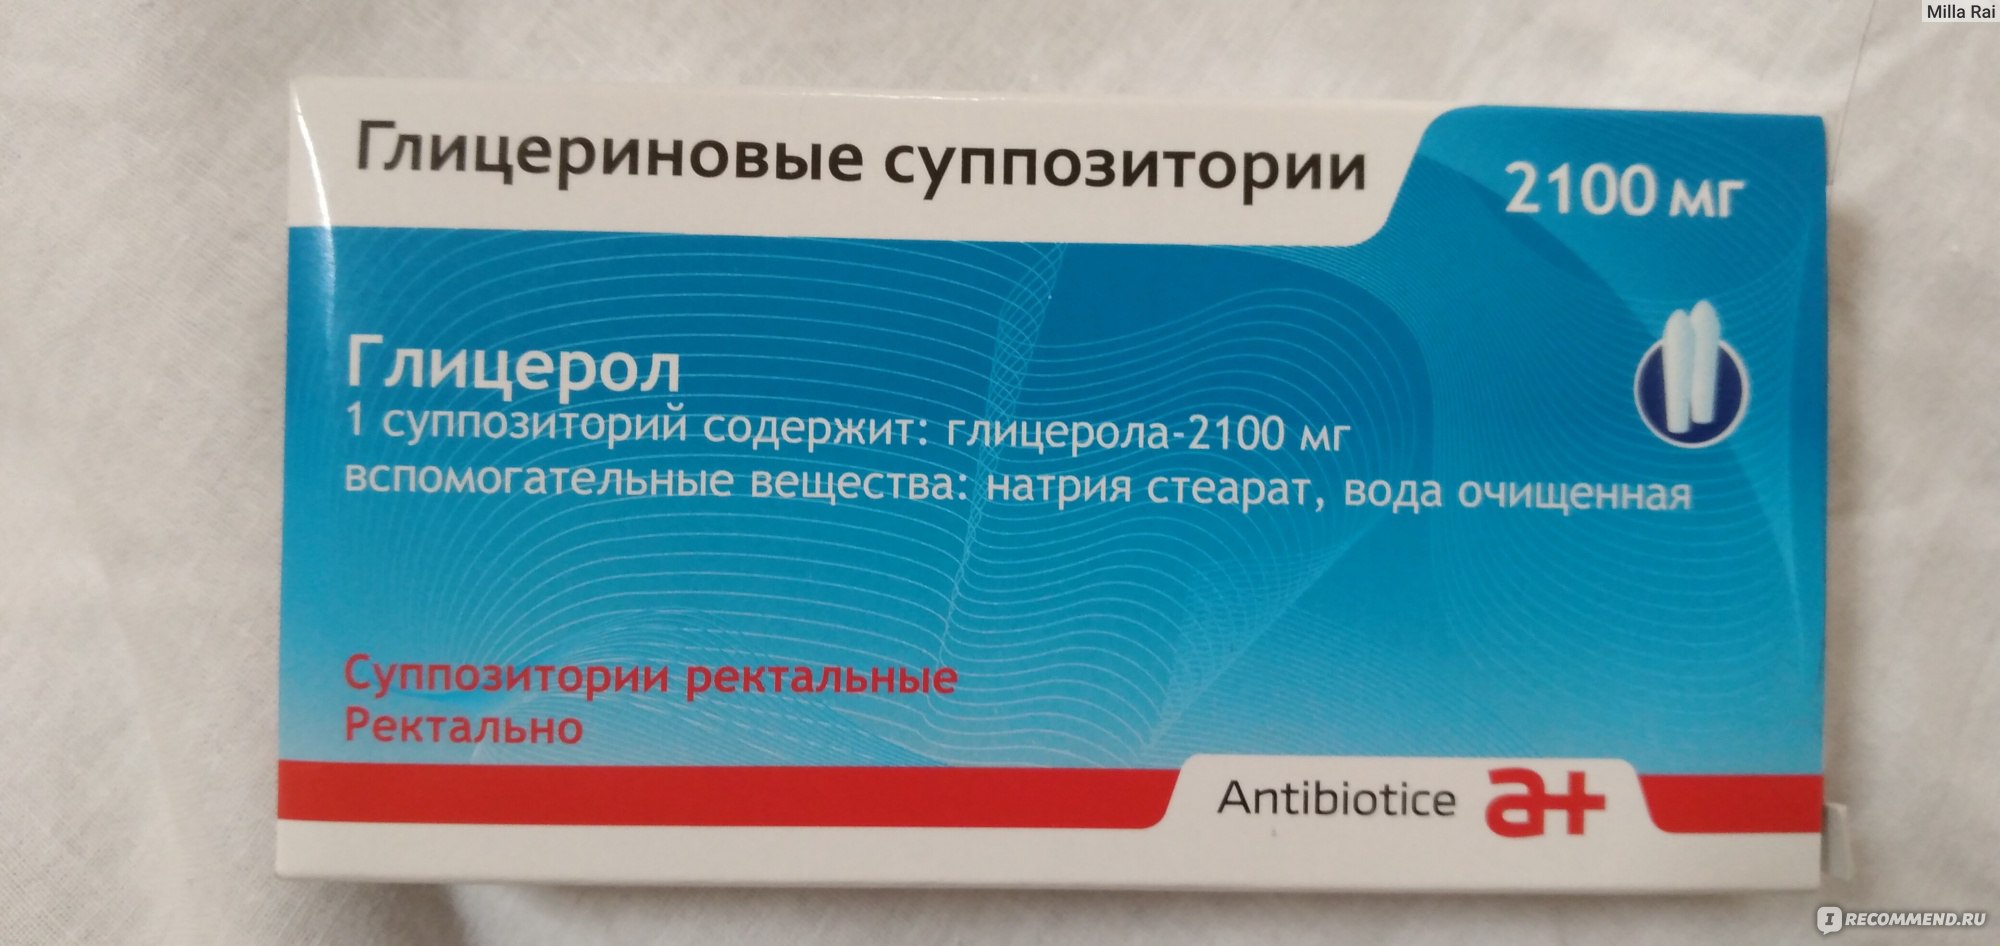 Глицериновые свечи 2100мг антибиотиче с. а.